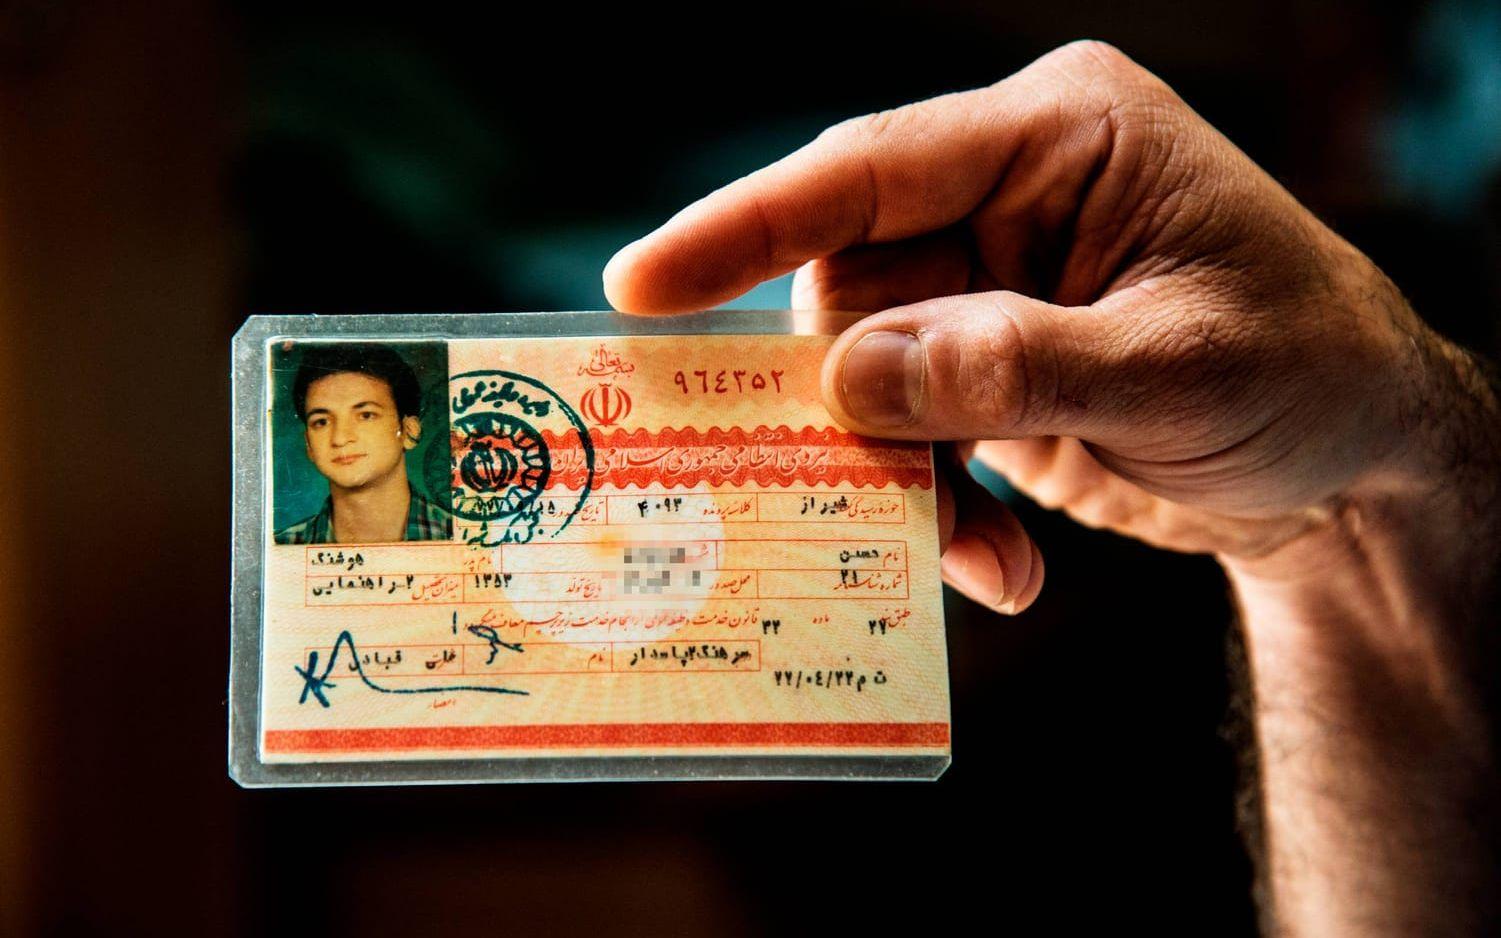 Istället för dödsstraff märktes Hasan som "sexuellt pervers" i sitt ID-kort. Bild: Stefan Berg